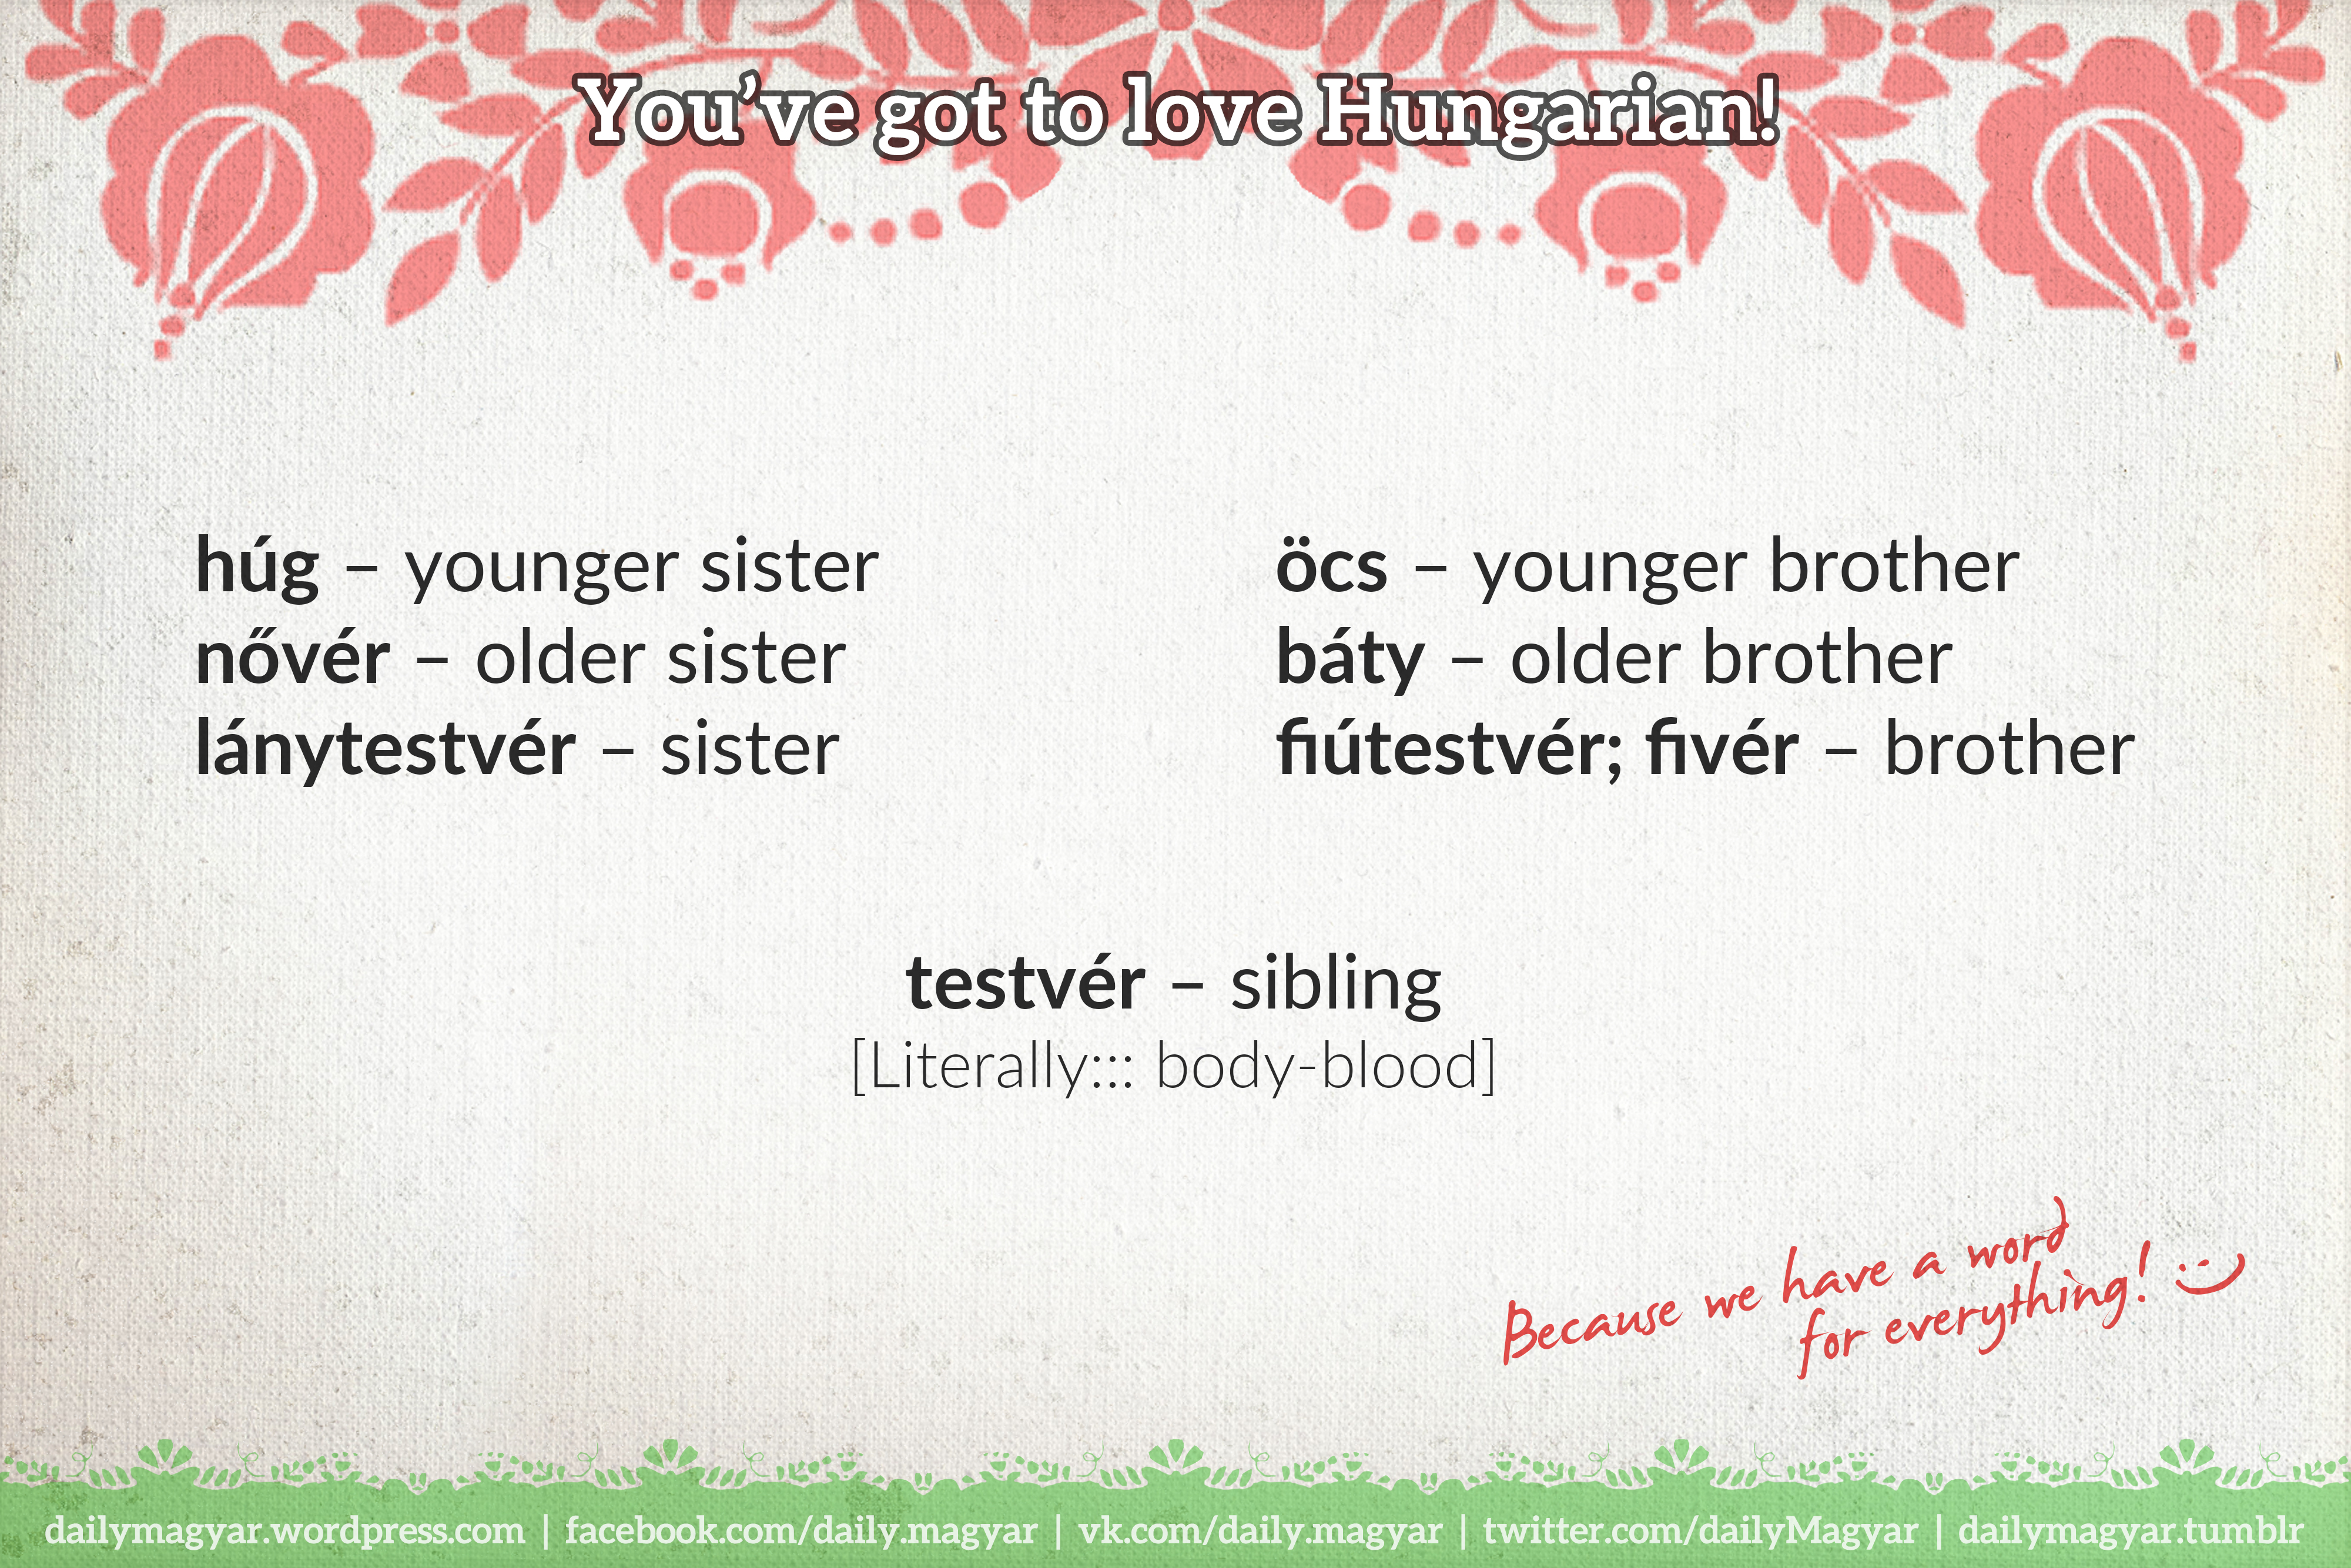 mađarska riječ sibling